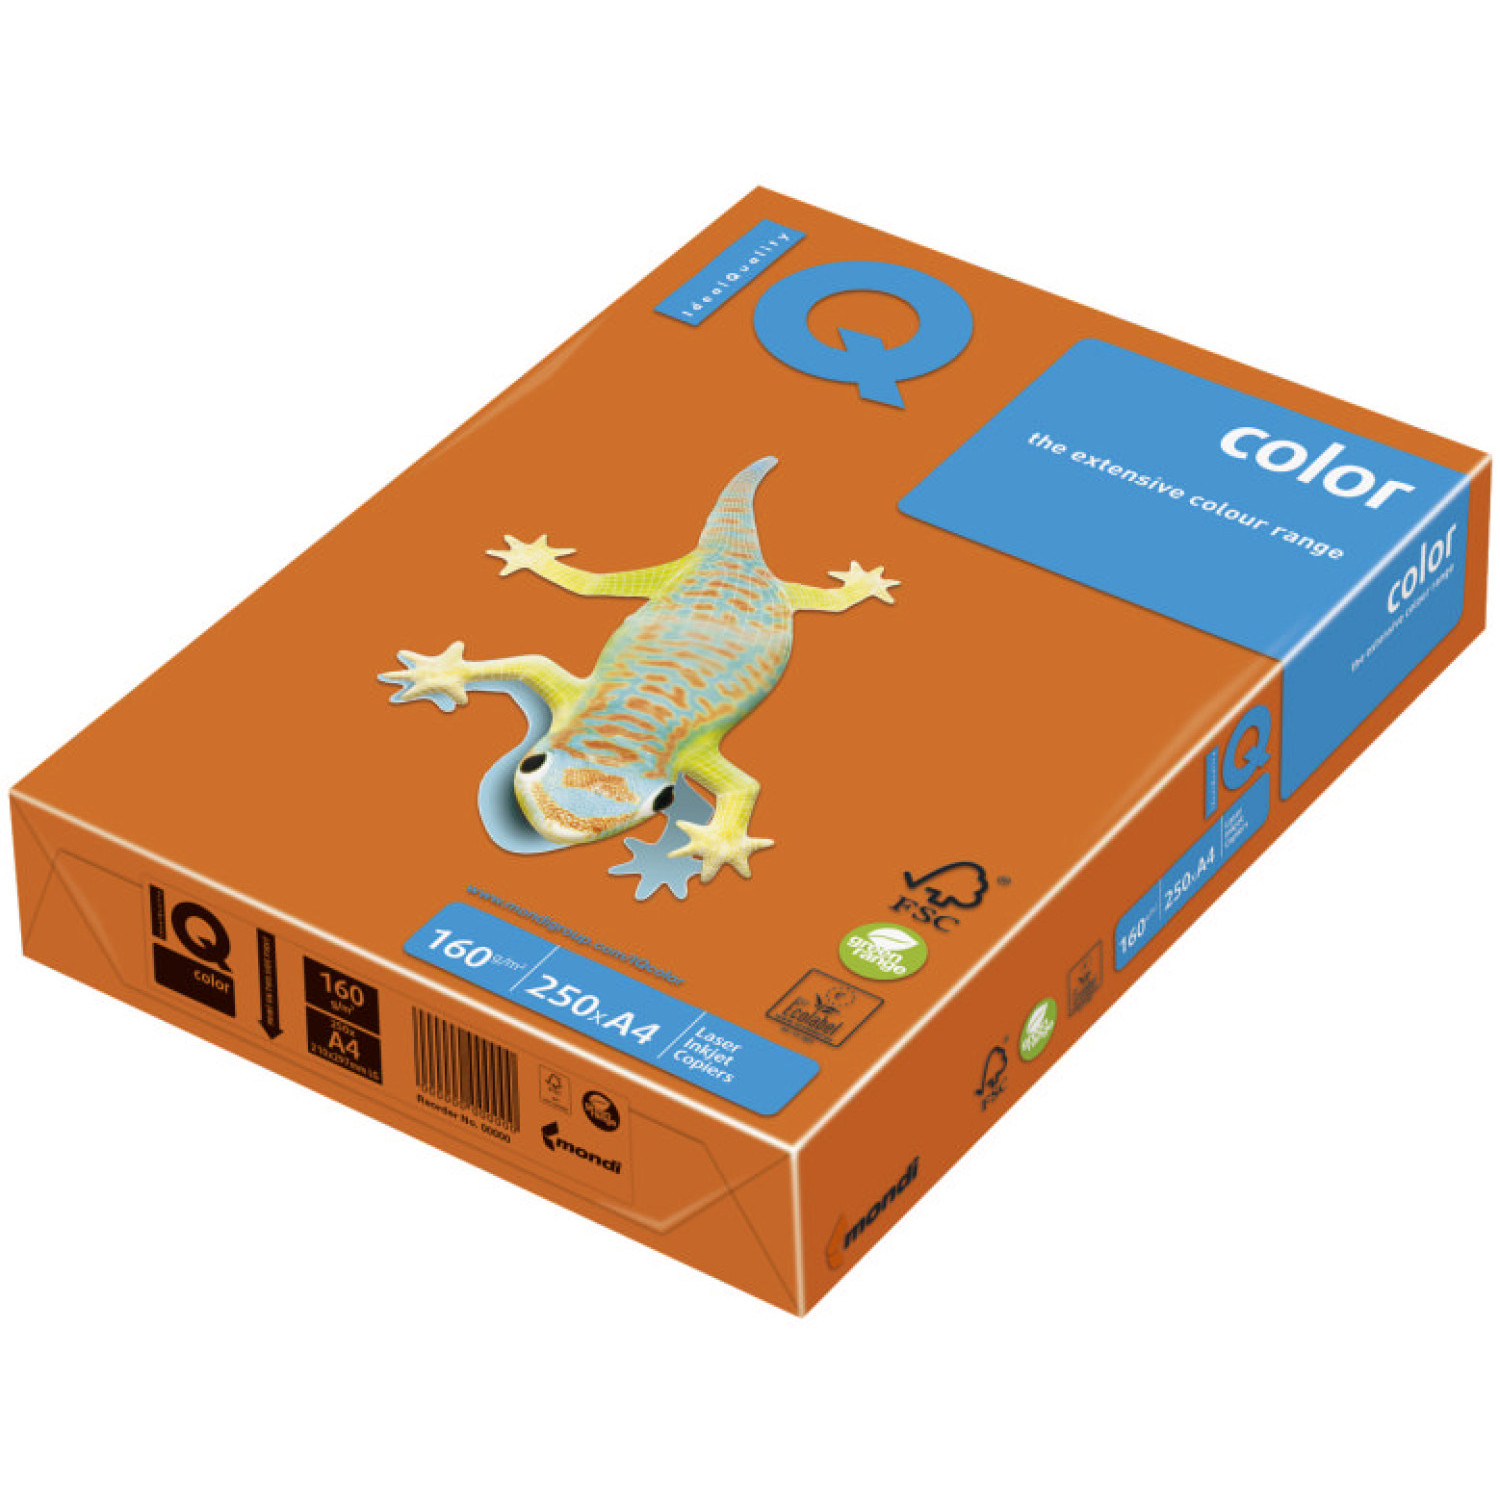 Копирен картон IQ OR43, 160 гр., оранжев